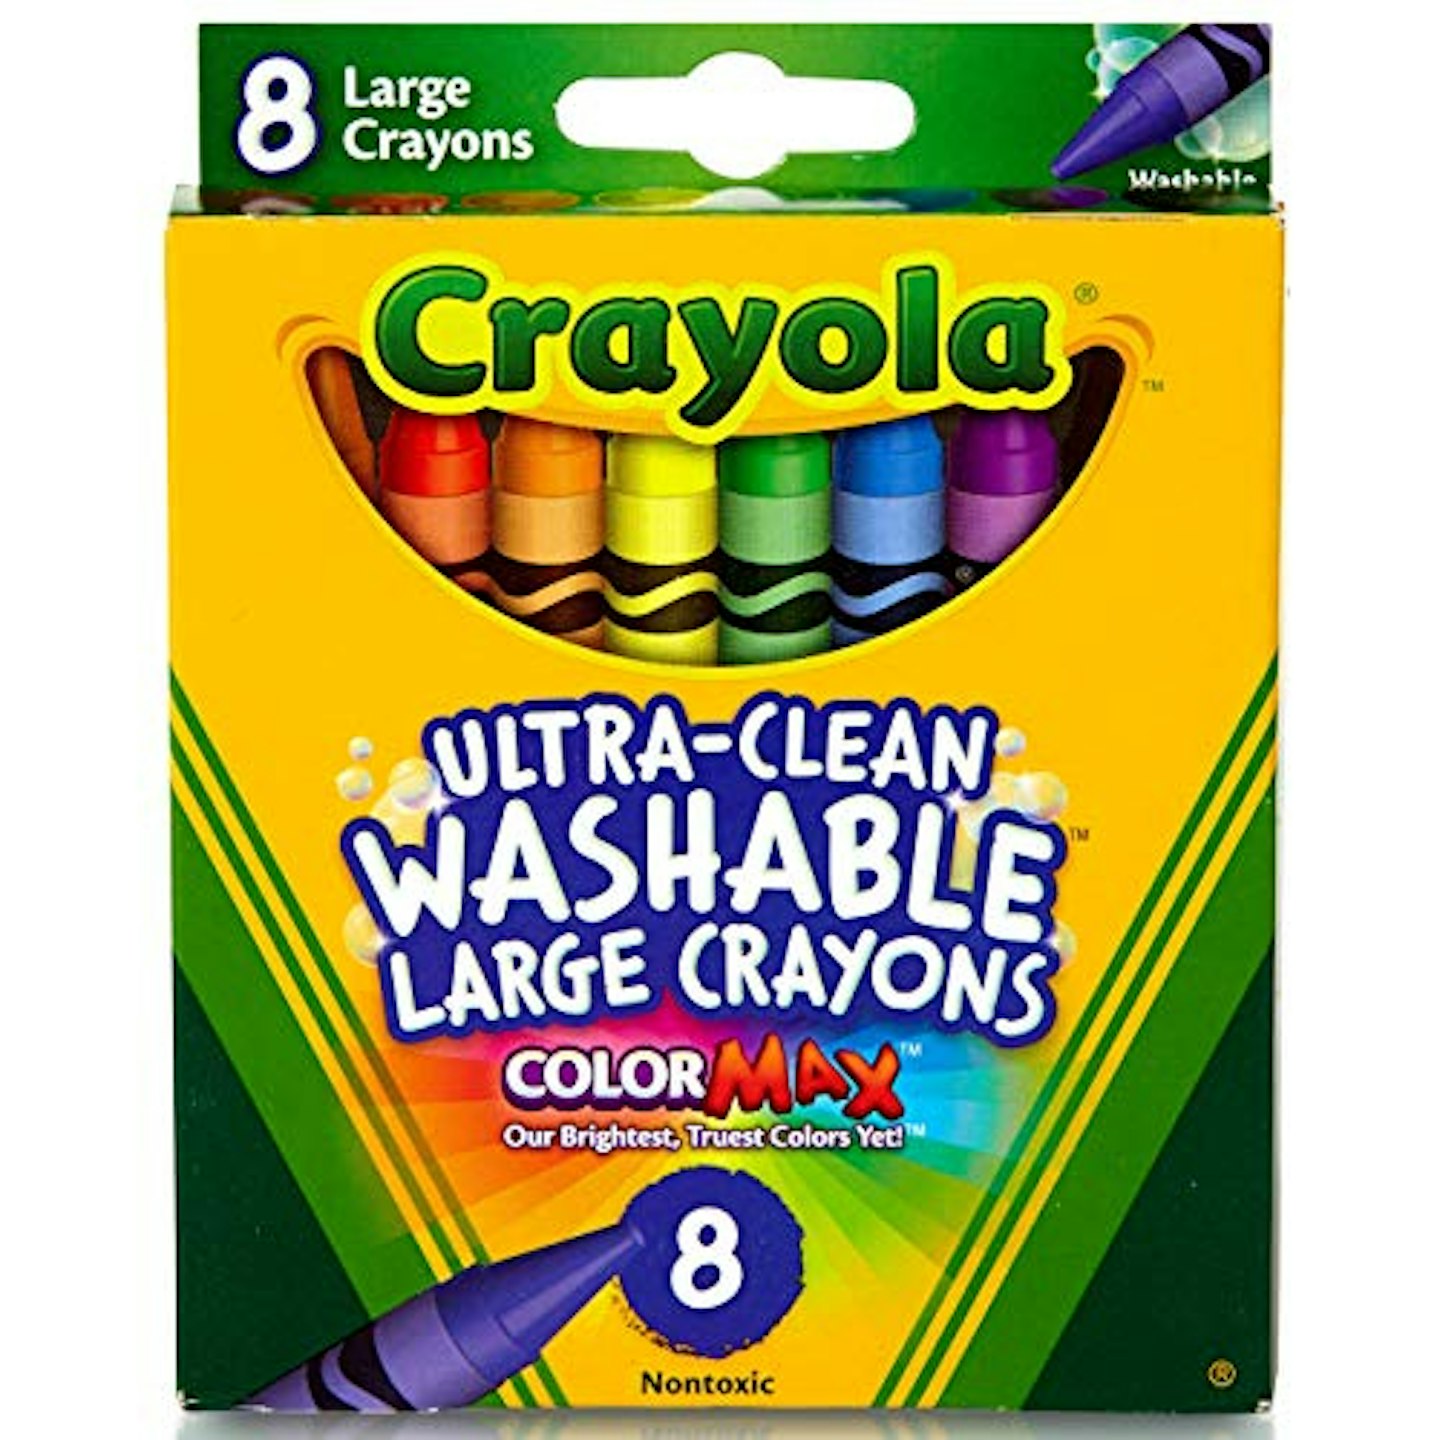 Honeysticks 16-Pack Jumbo Crayons